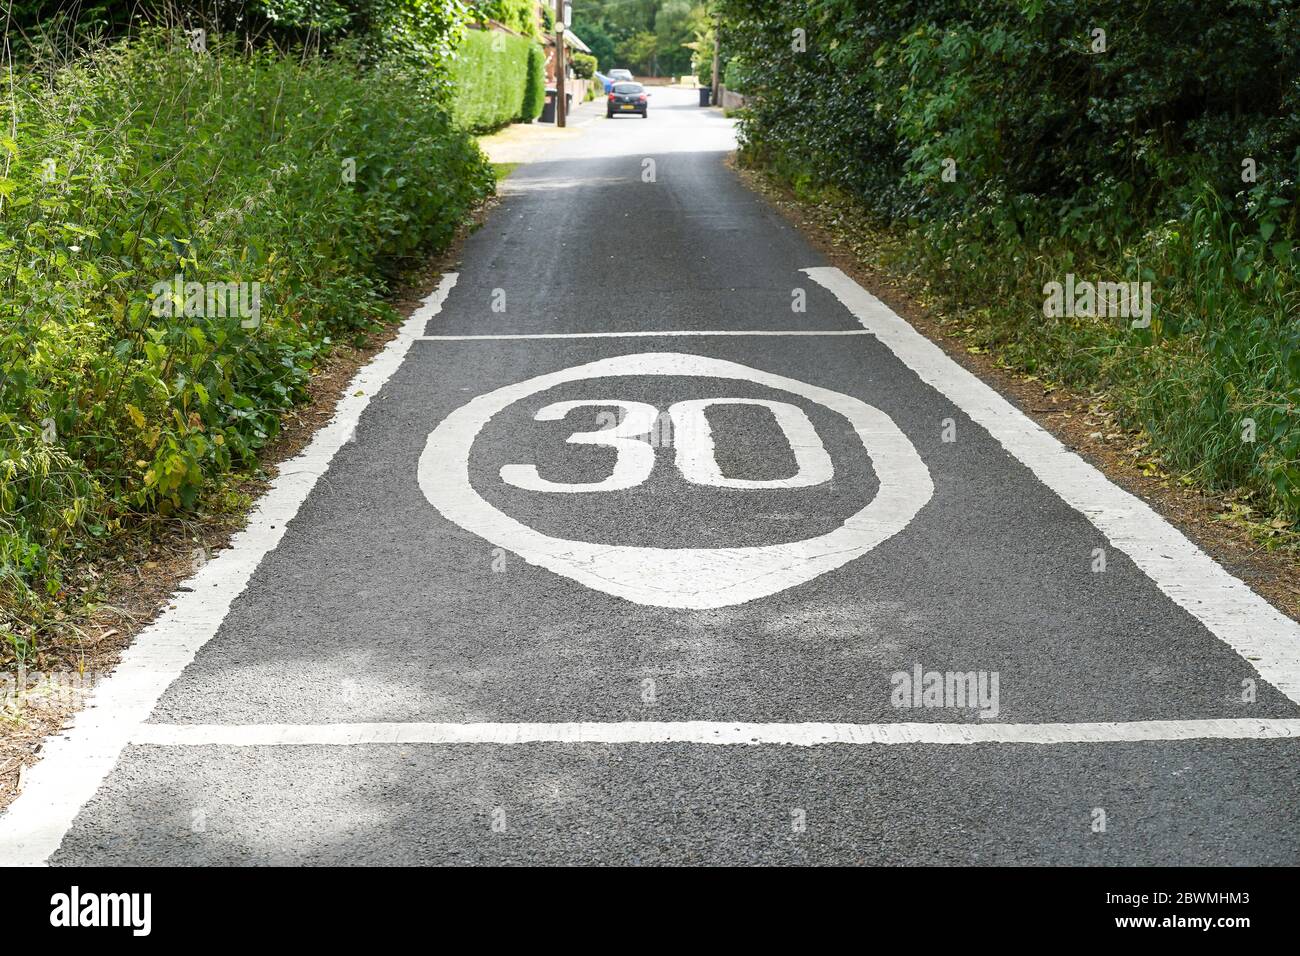 Nahaufnahme von 30 mph Geschwindigkeitsbegrenzung Straßenmarkierungen auf ländlichen Landstraße gemalt, UK Landschaft. Kennzeichnungen zur Geschwindigkeitsbegrenzung. Stockfoto